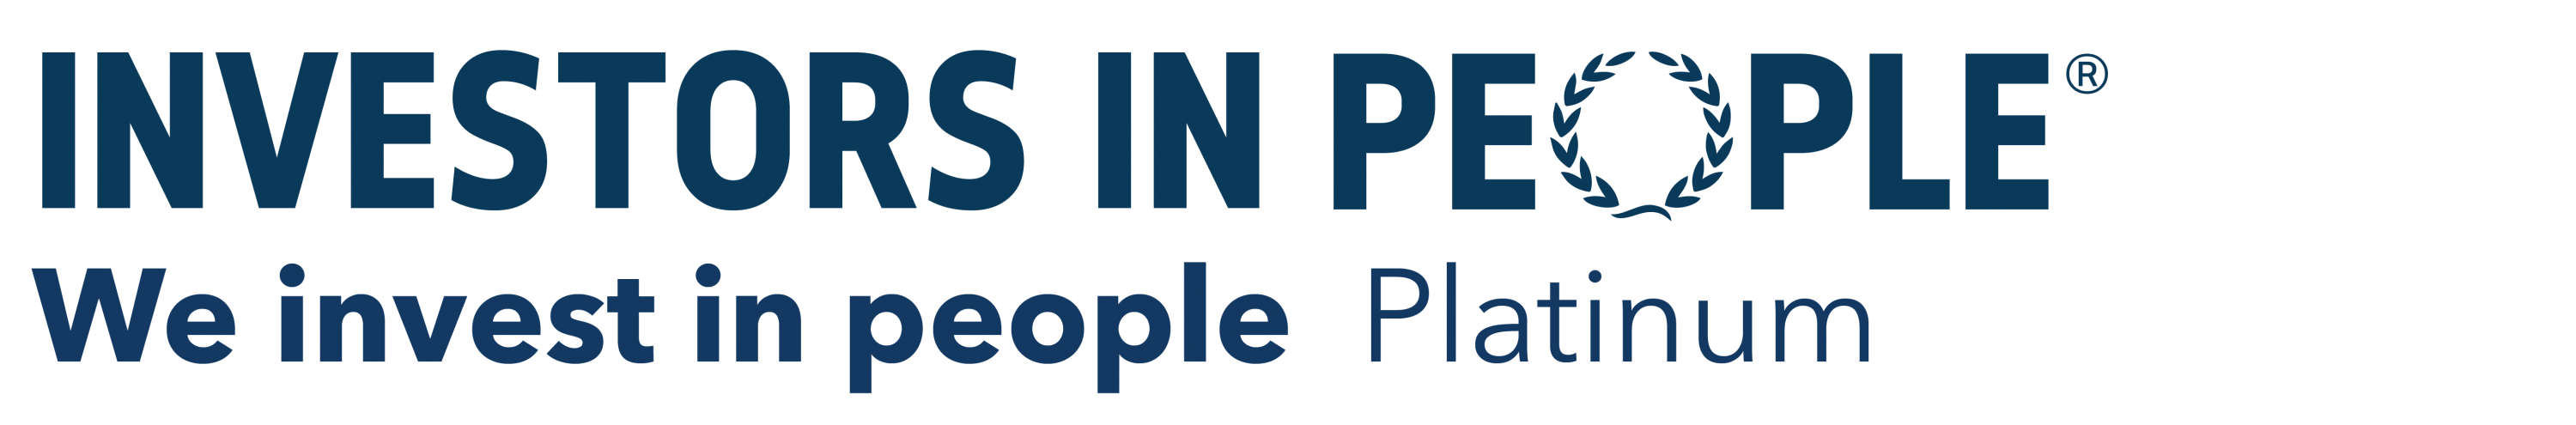 Investors in People Platinum Logo